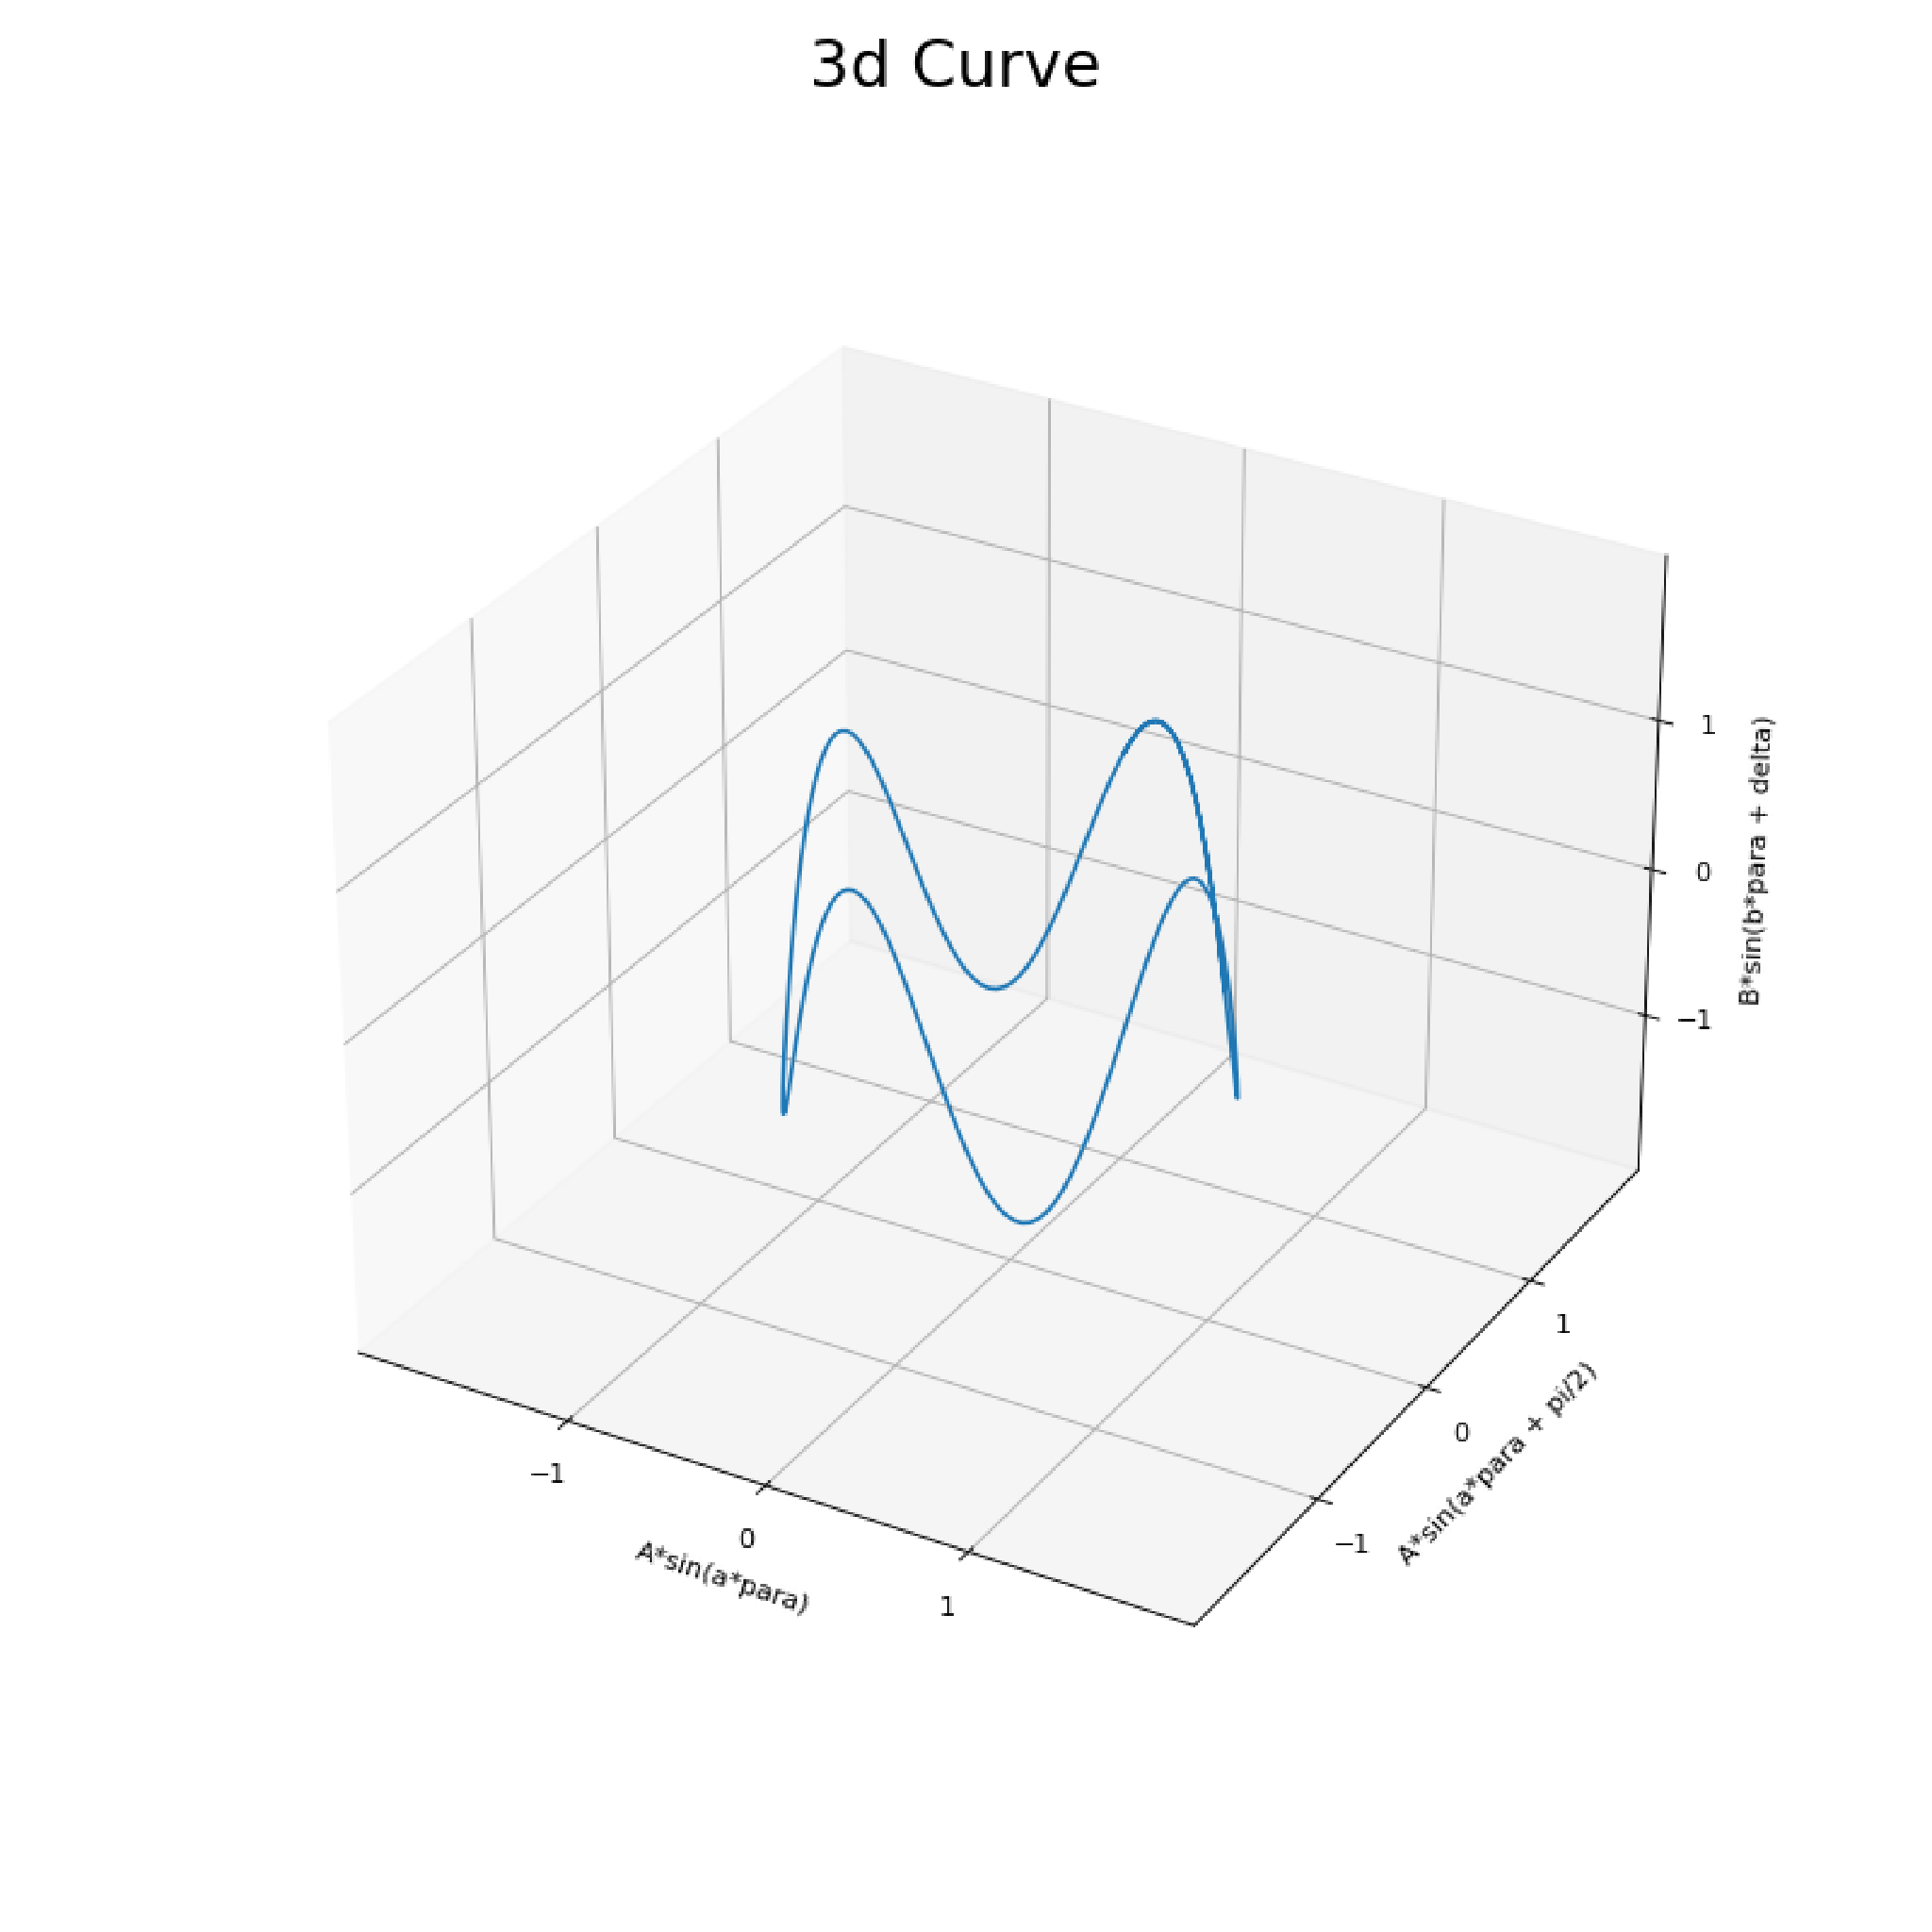 Fig 02: 3d Curve representation